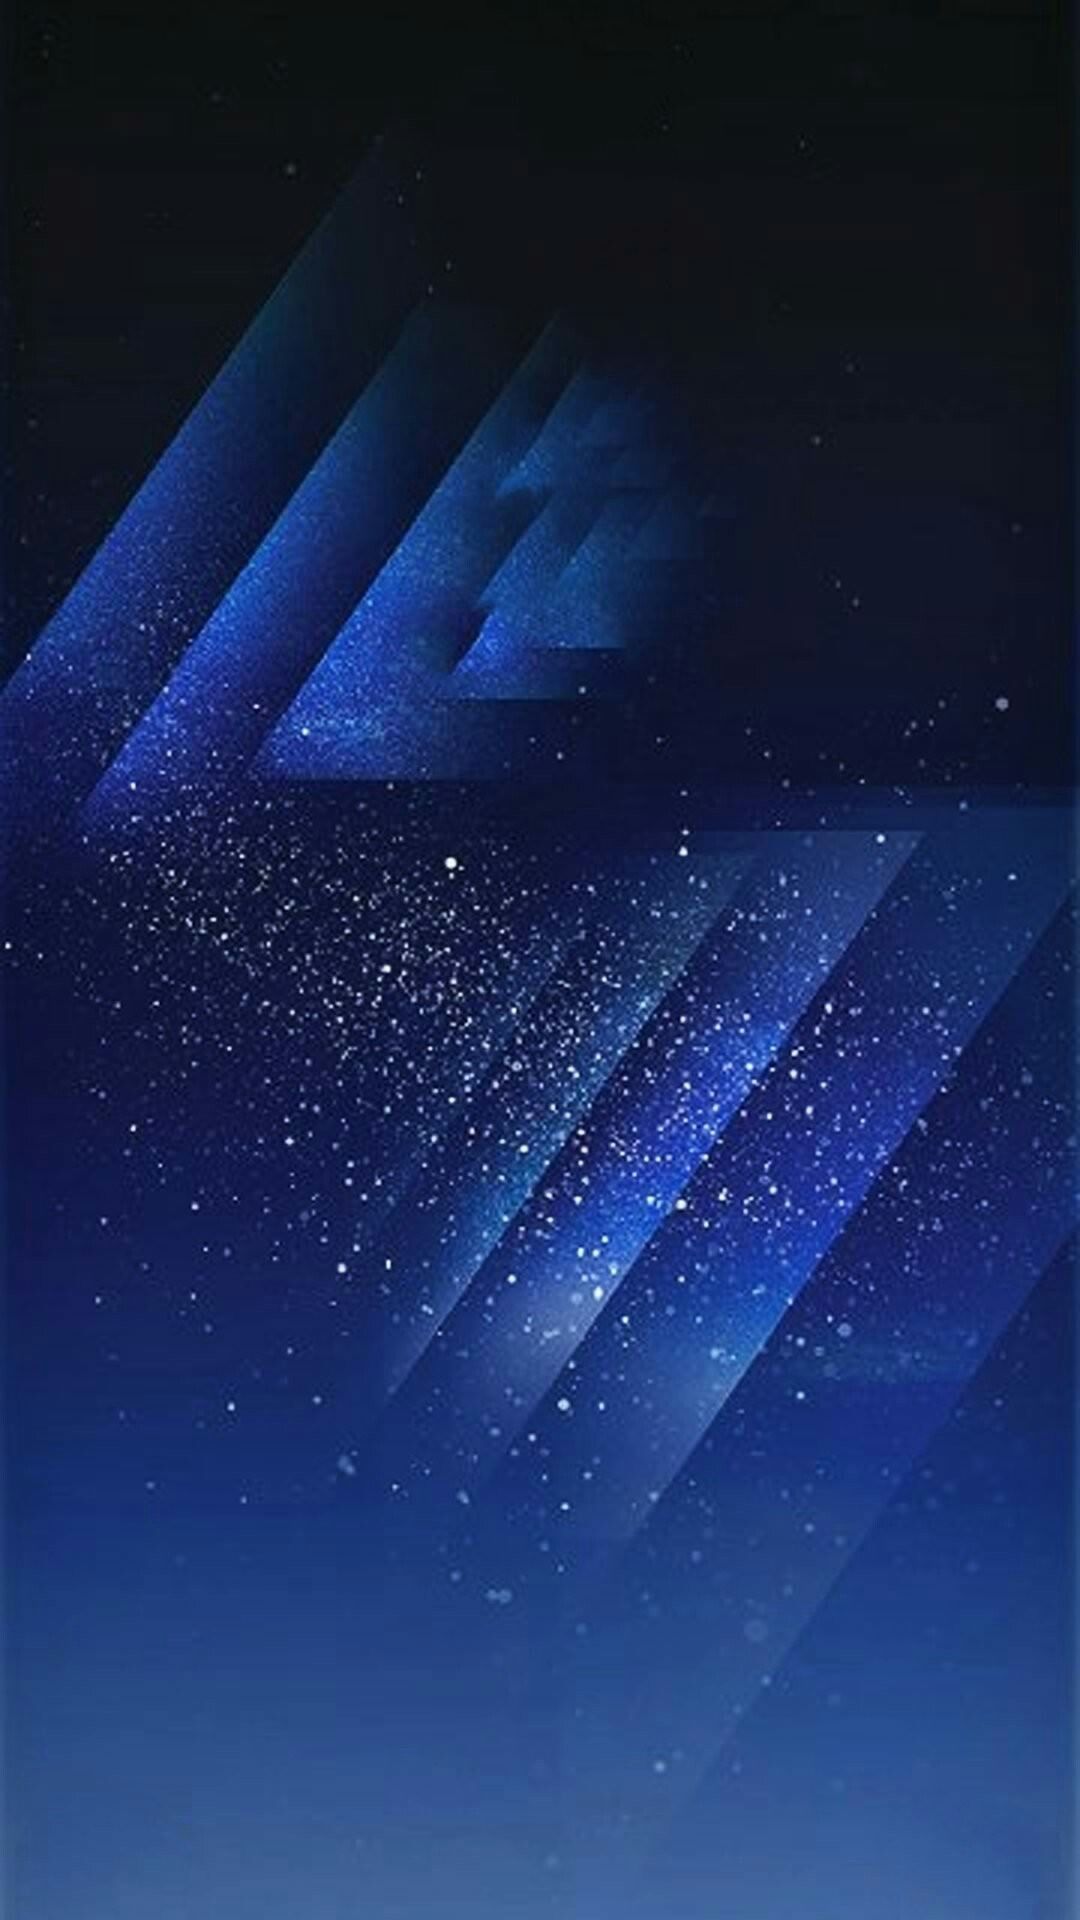 48+] Samsung S8 Wallpaper Lock Screen - WallpaperSafari